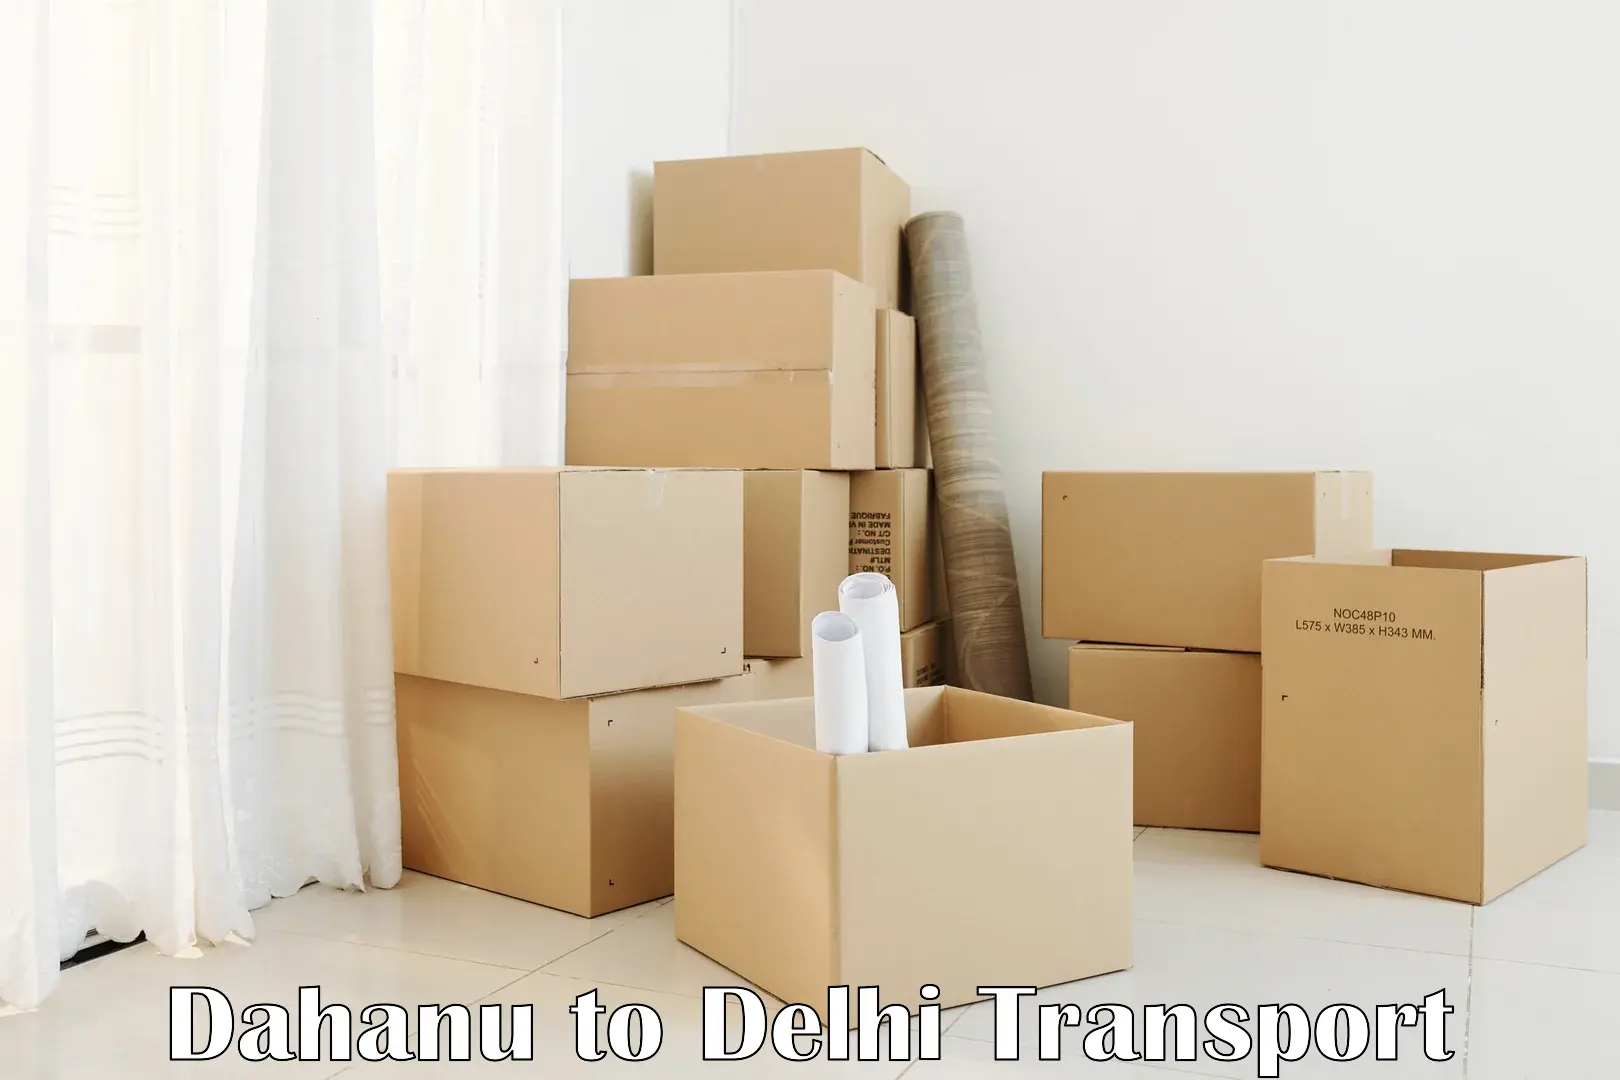 Container transport service Dahanu to Subhash Nagar